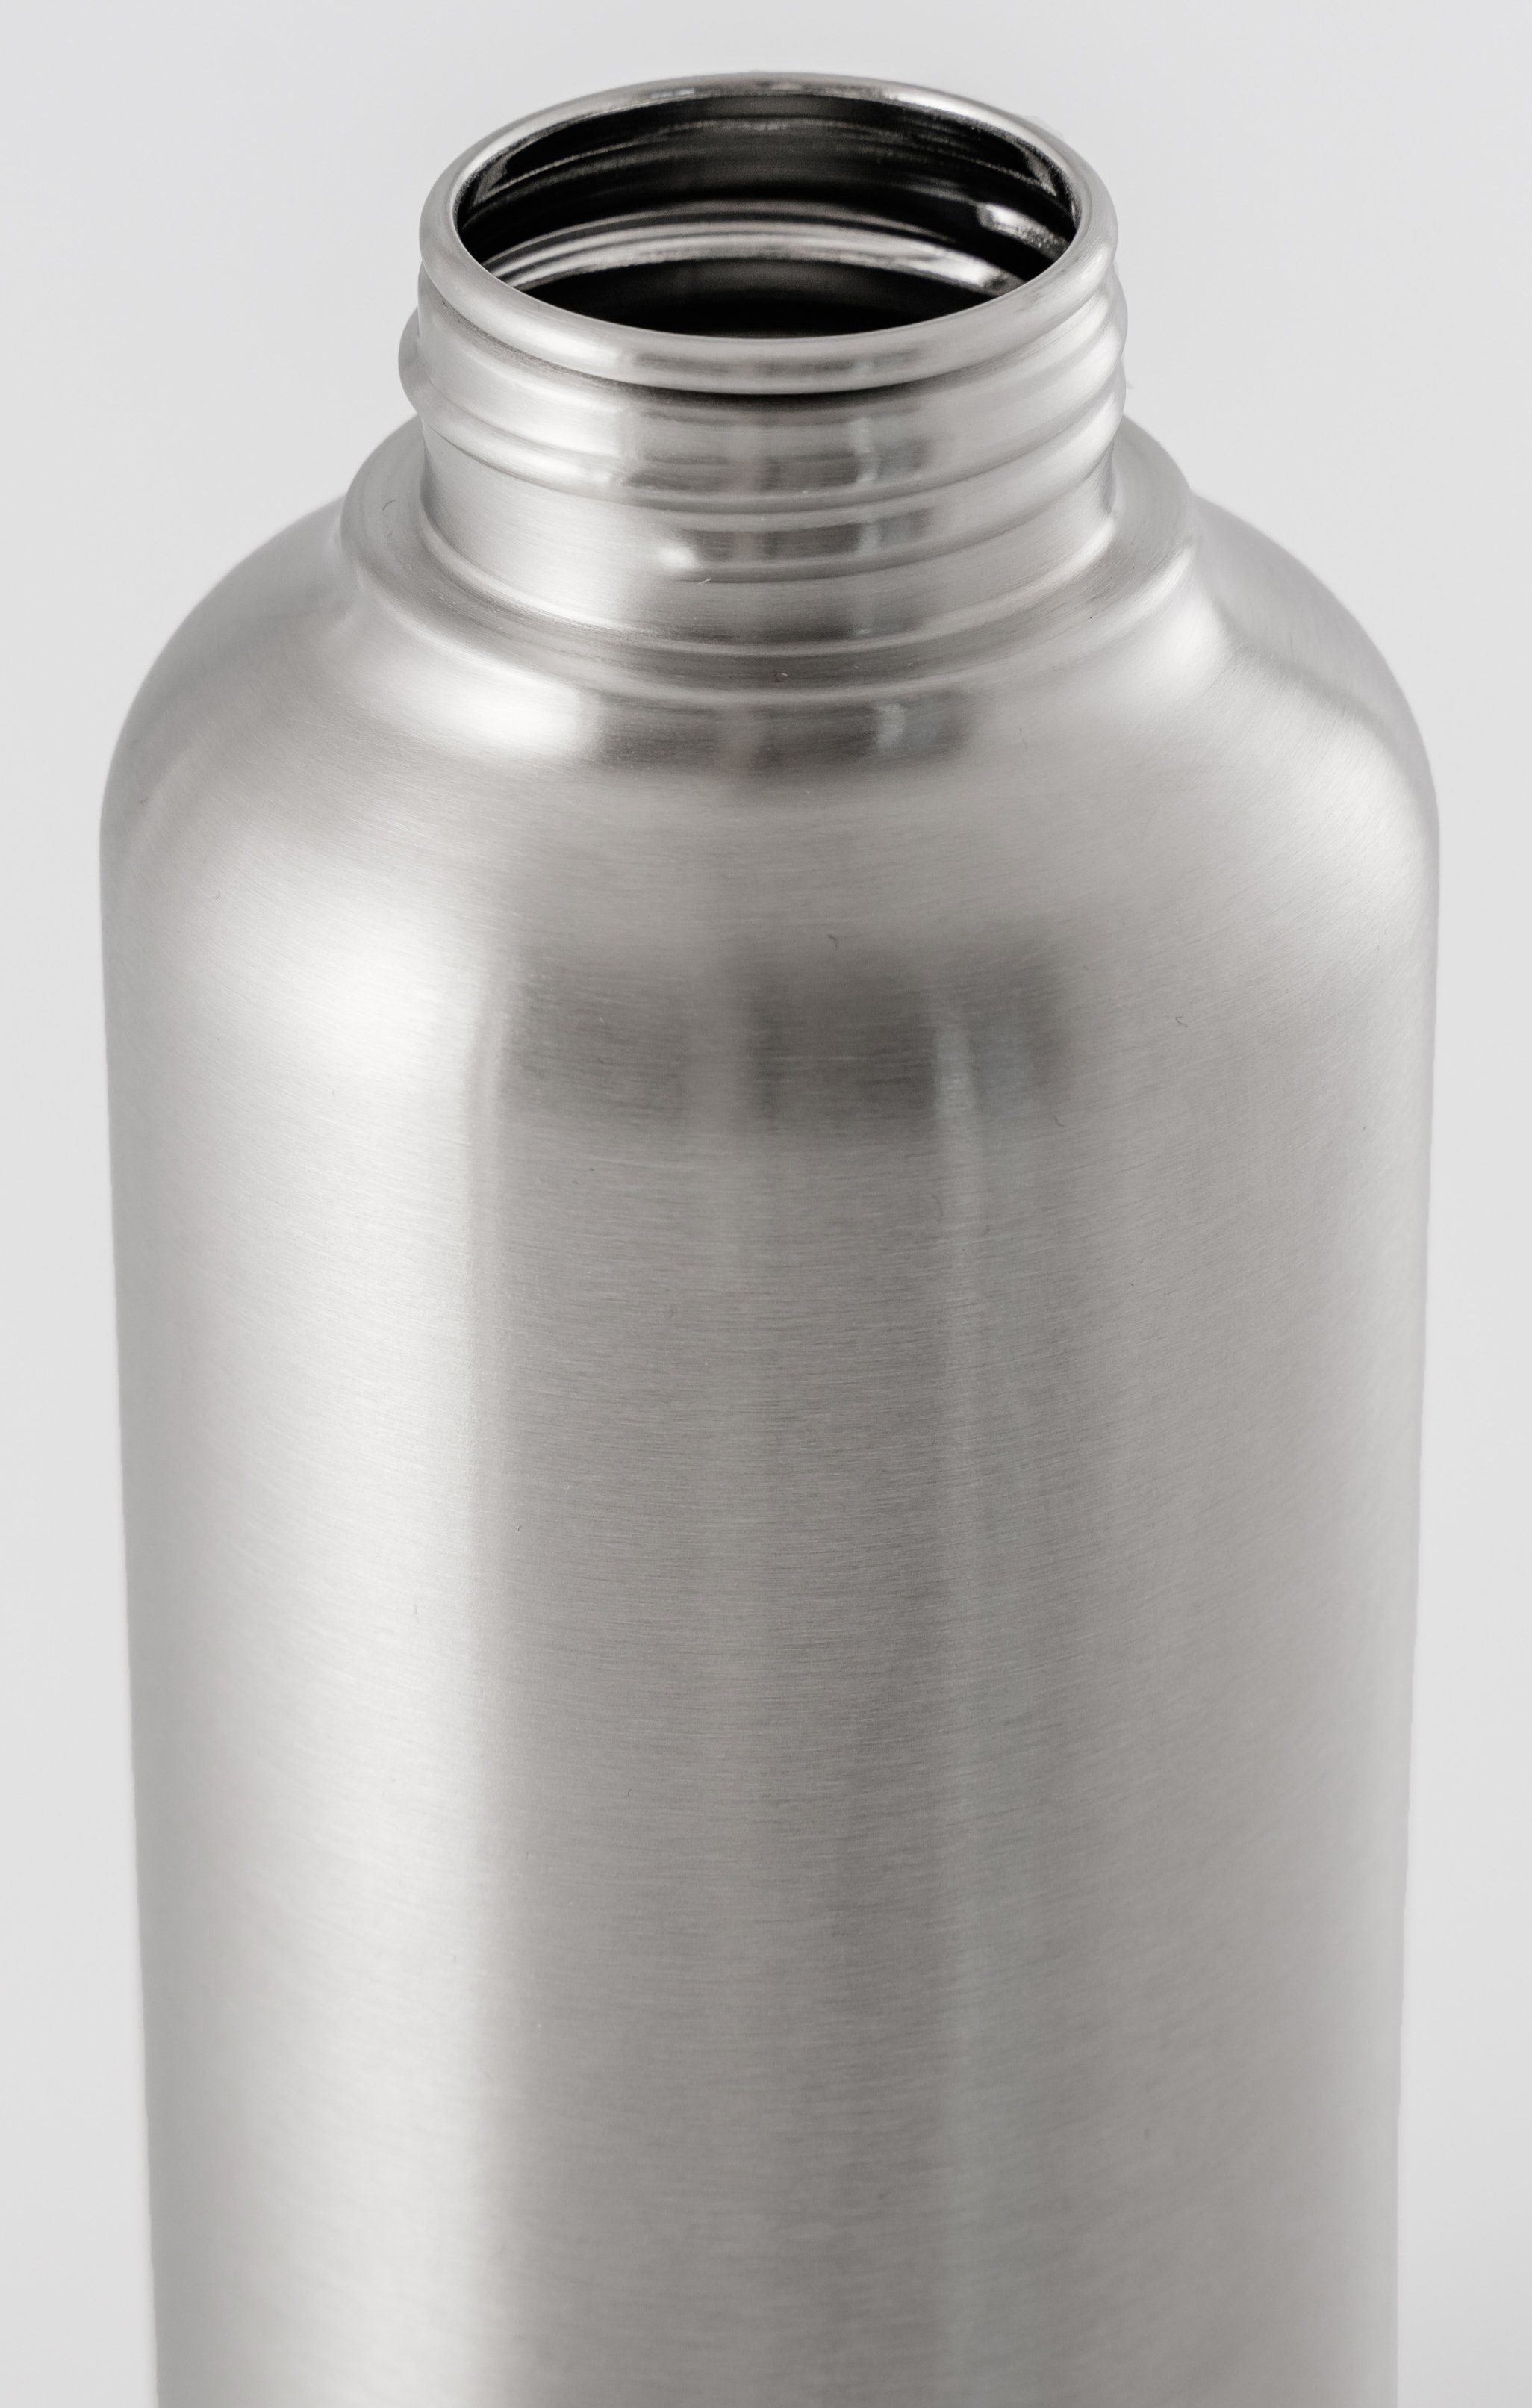 aus Trinkflaschen-Leichtgewicht 683372 Off mit Steel, Edelstahl, Steel Timeless Trinkflasche Tragegriff equa